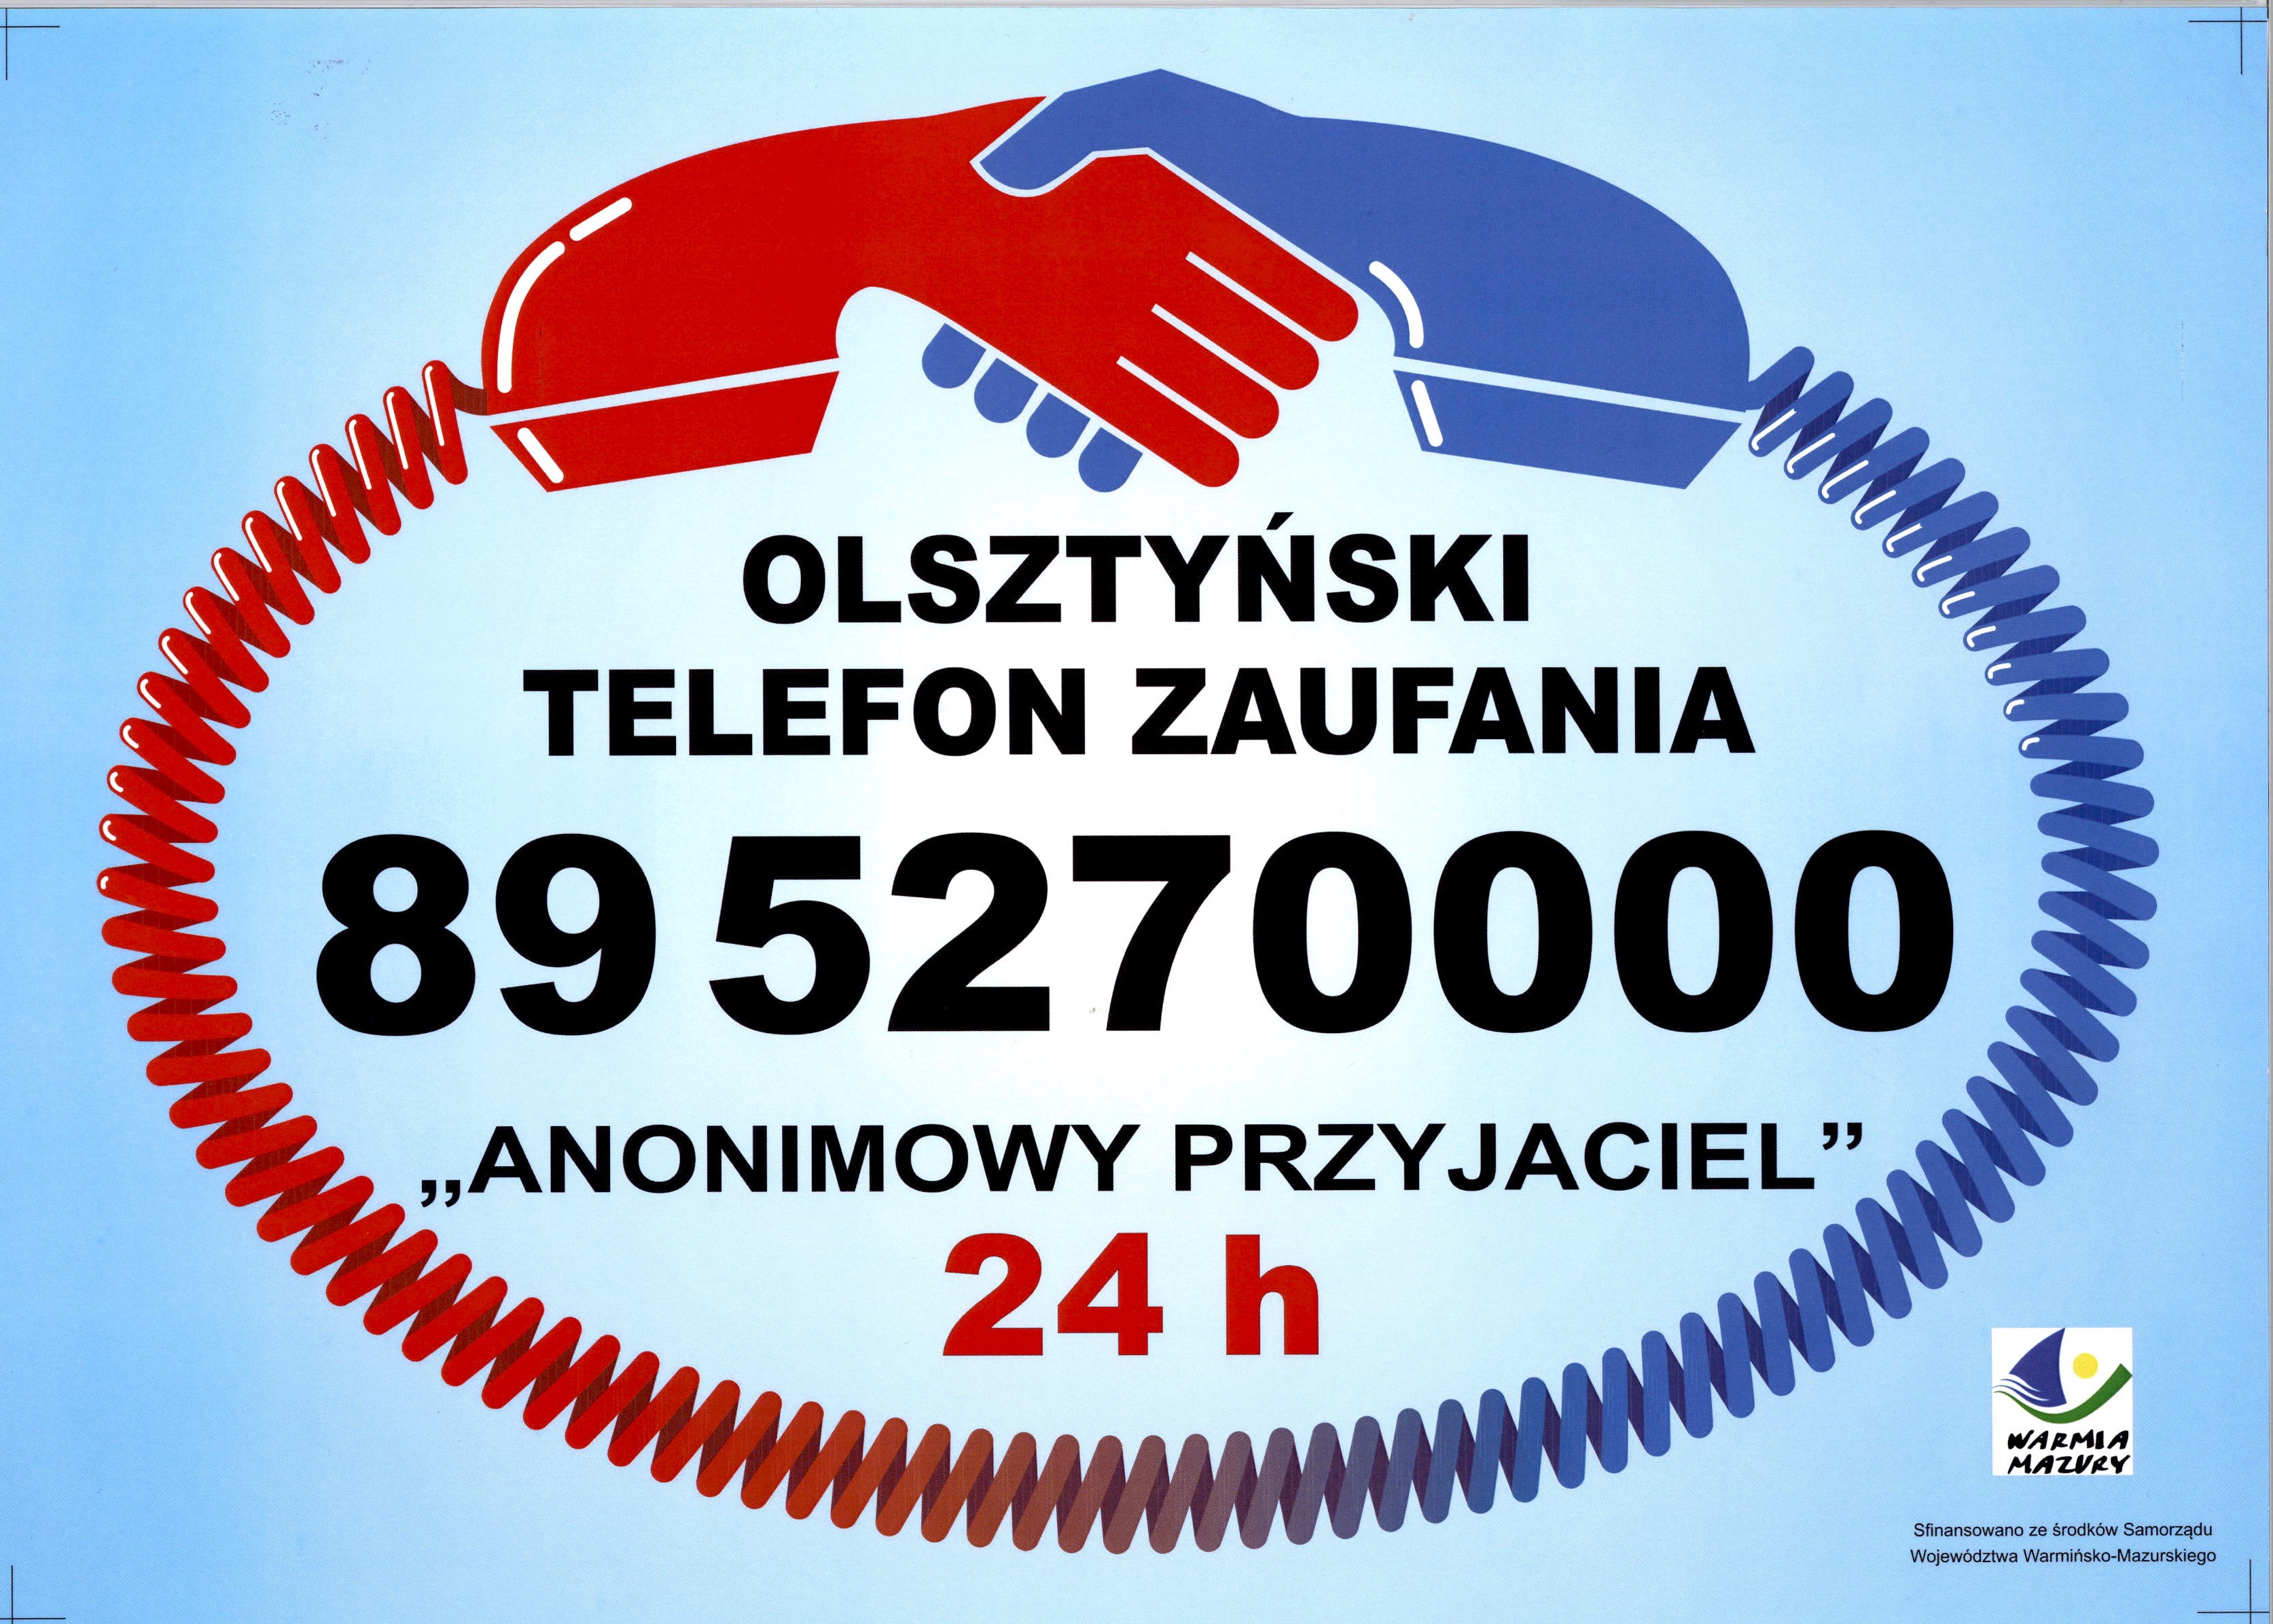 Olsztyński telefon zaufania